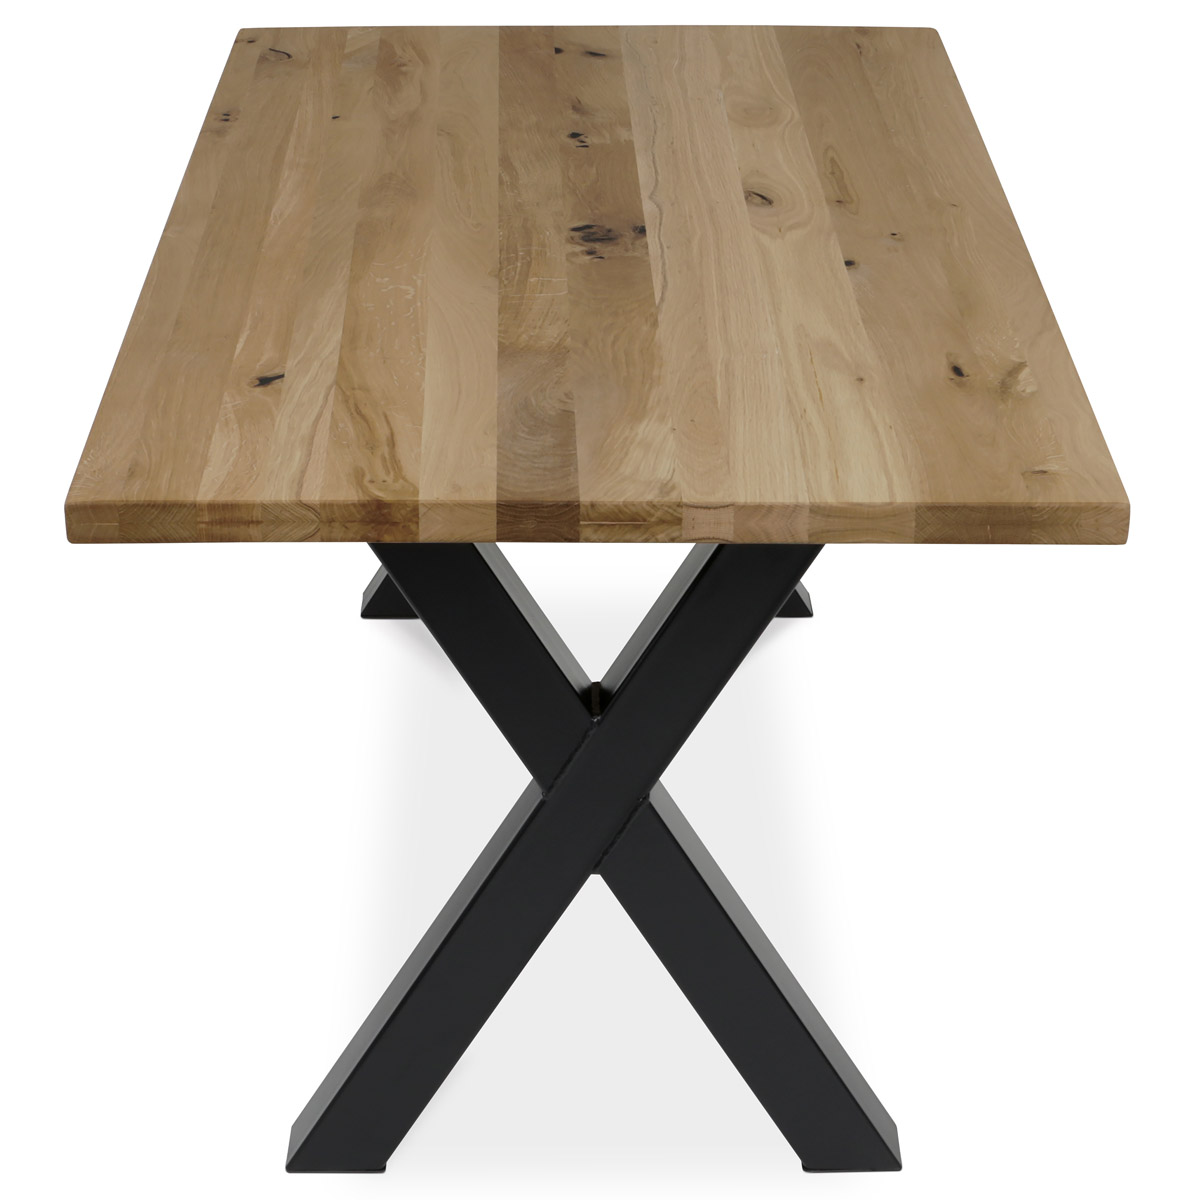 Stůl jídelní, 160x90x75 cm, masiv dub, kovové podnoží ve tvaru písmene "X" , černý lak